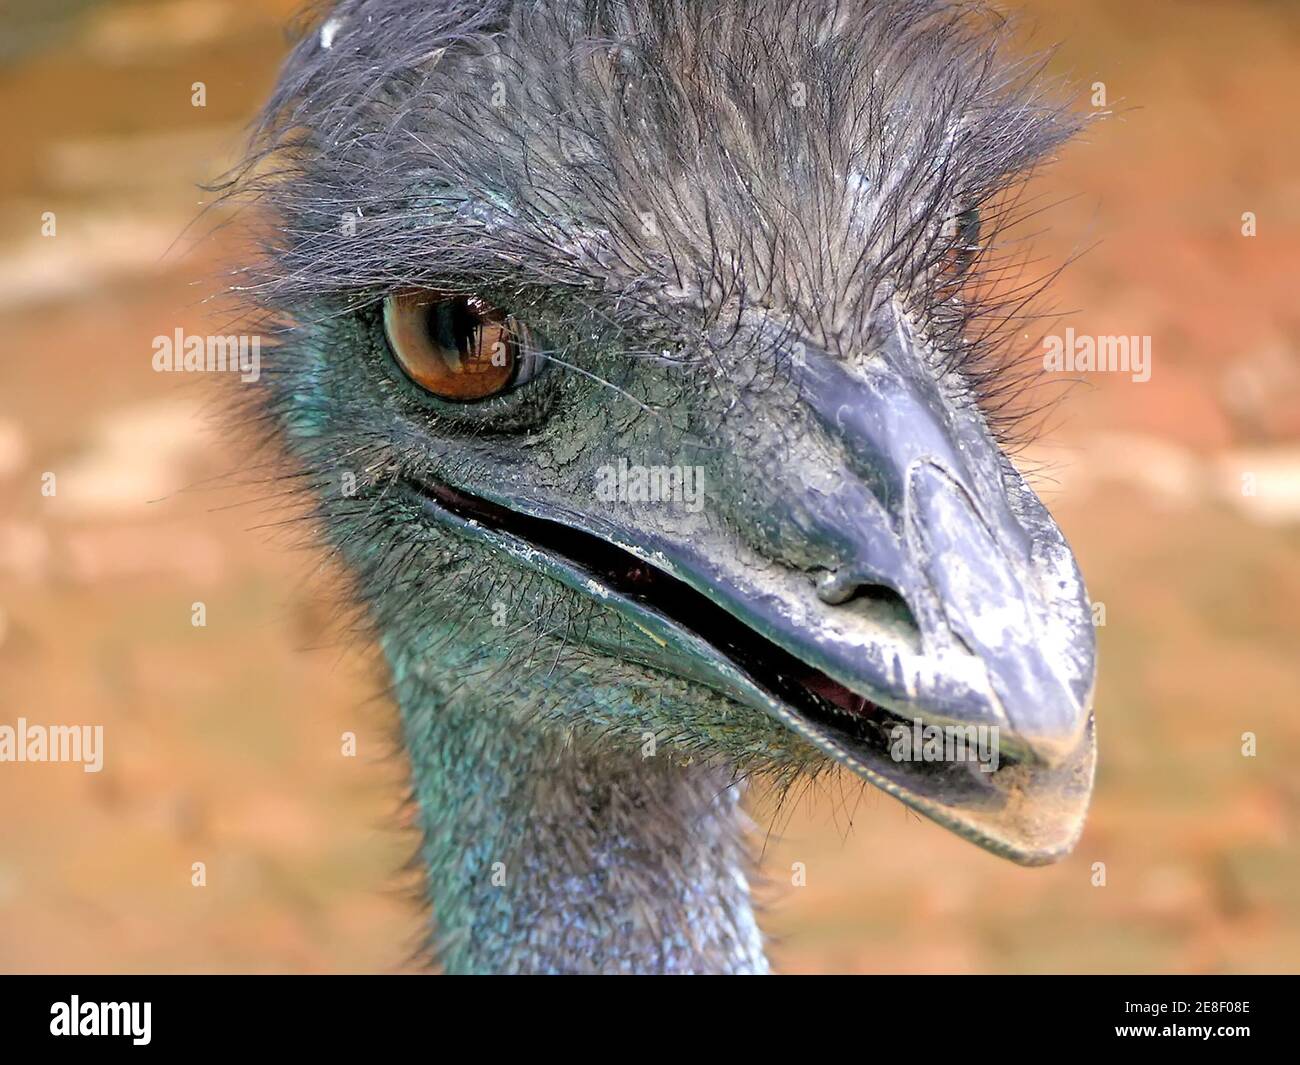 wedstrijd impliciet een miljoen a kind of animal named emu Stock Photo - Alamy